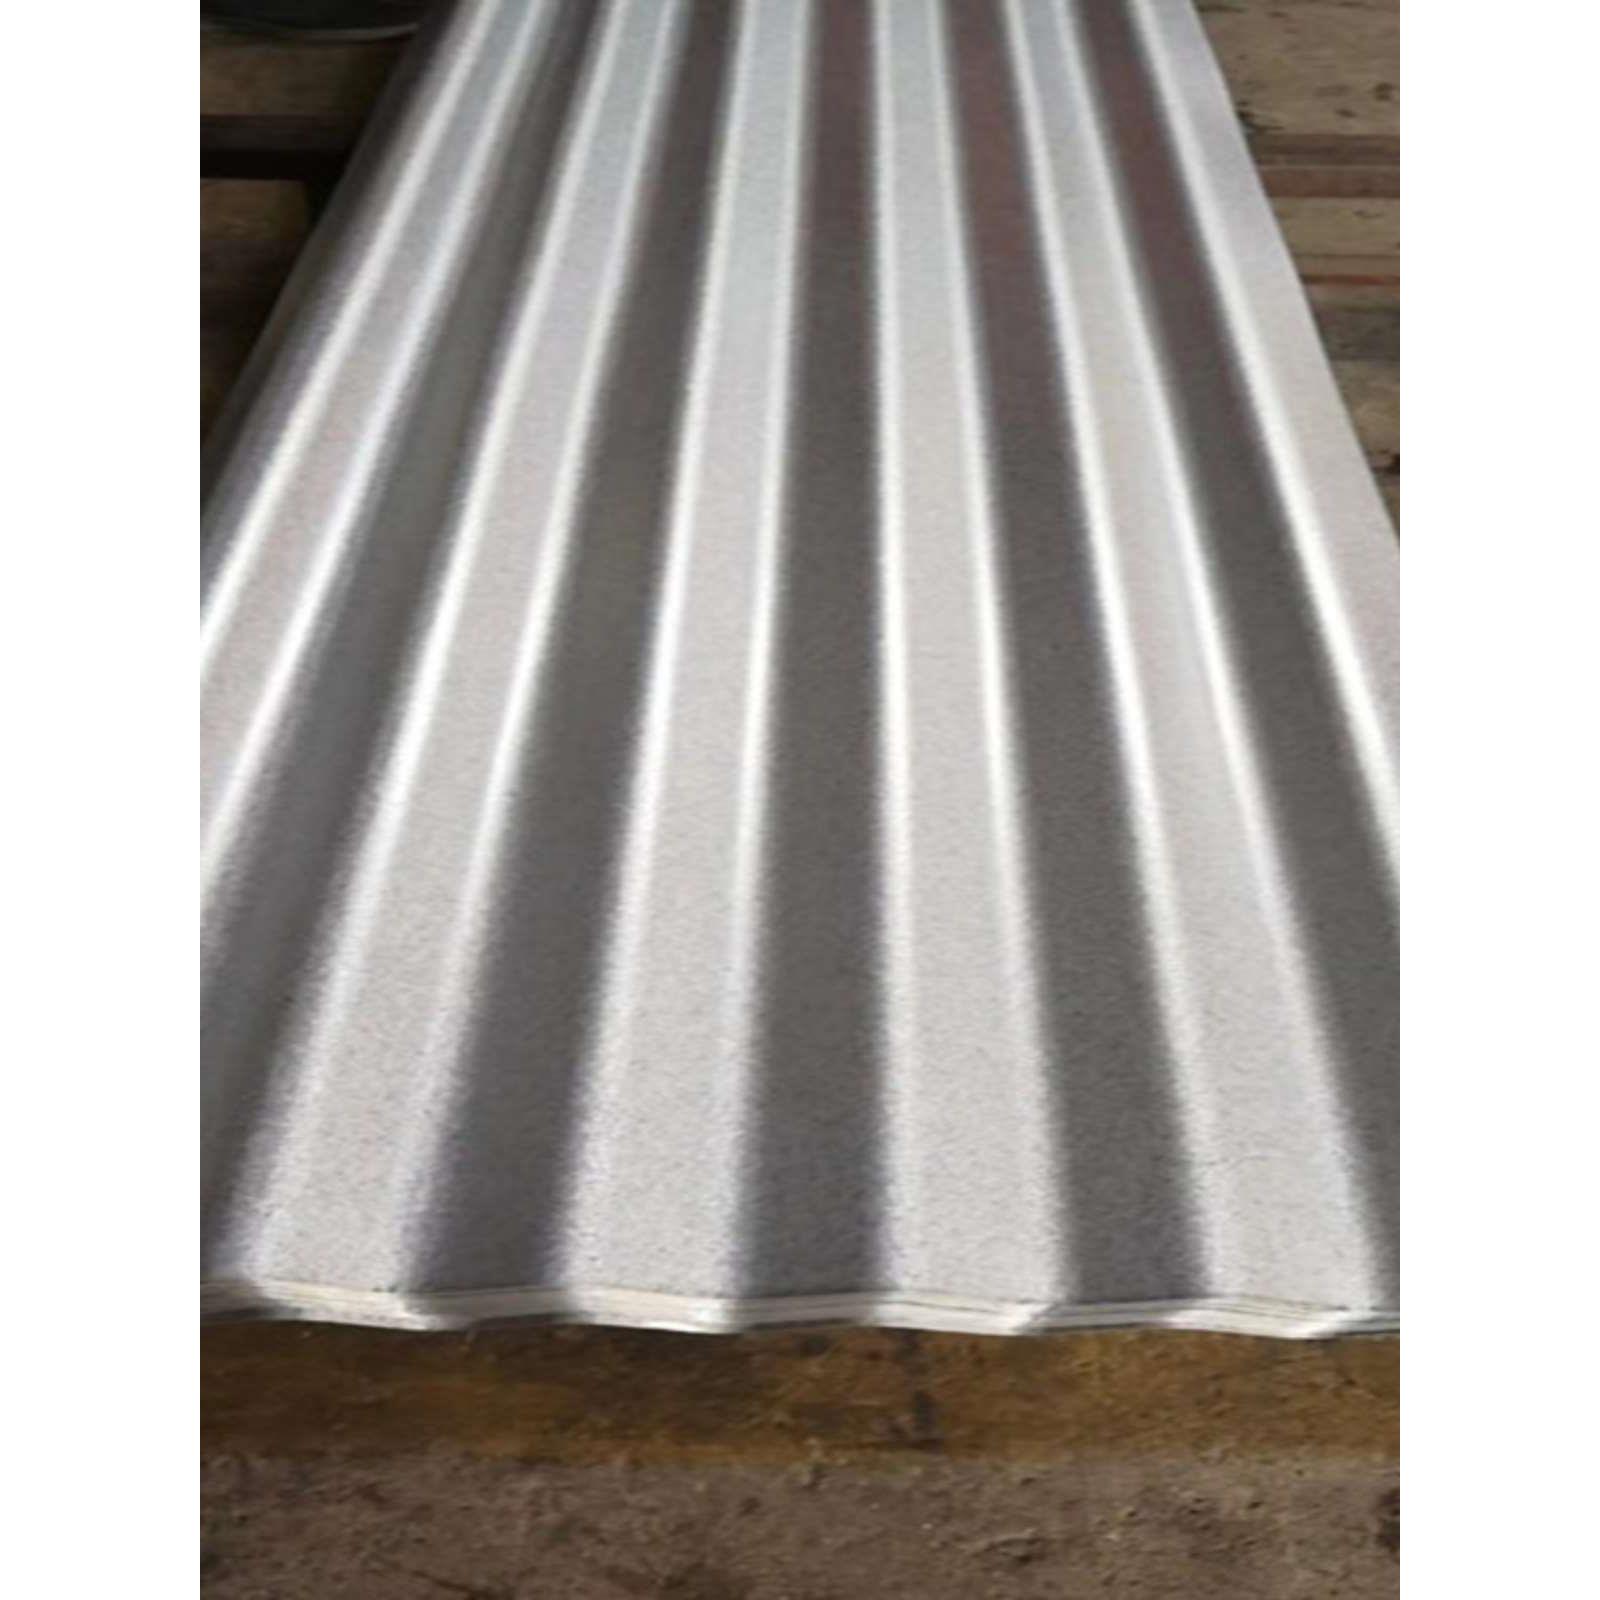 镀铝锌波纹板 光伏走道板 厚0.8毫米 实用83.6公分宽 长度2-3米